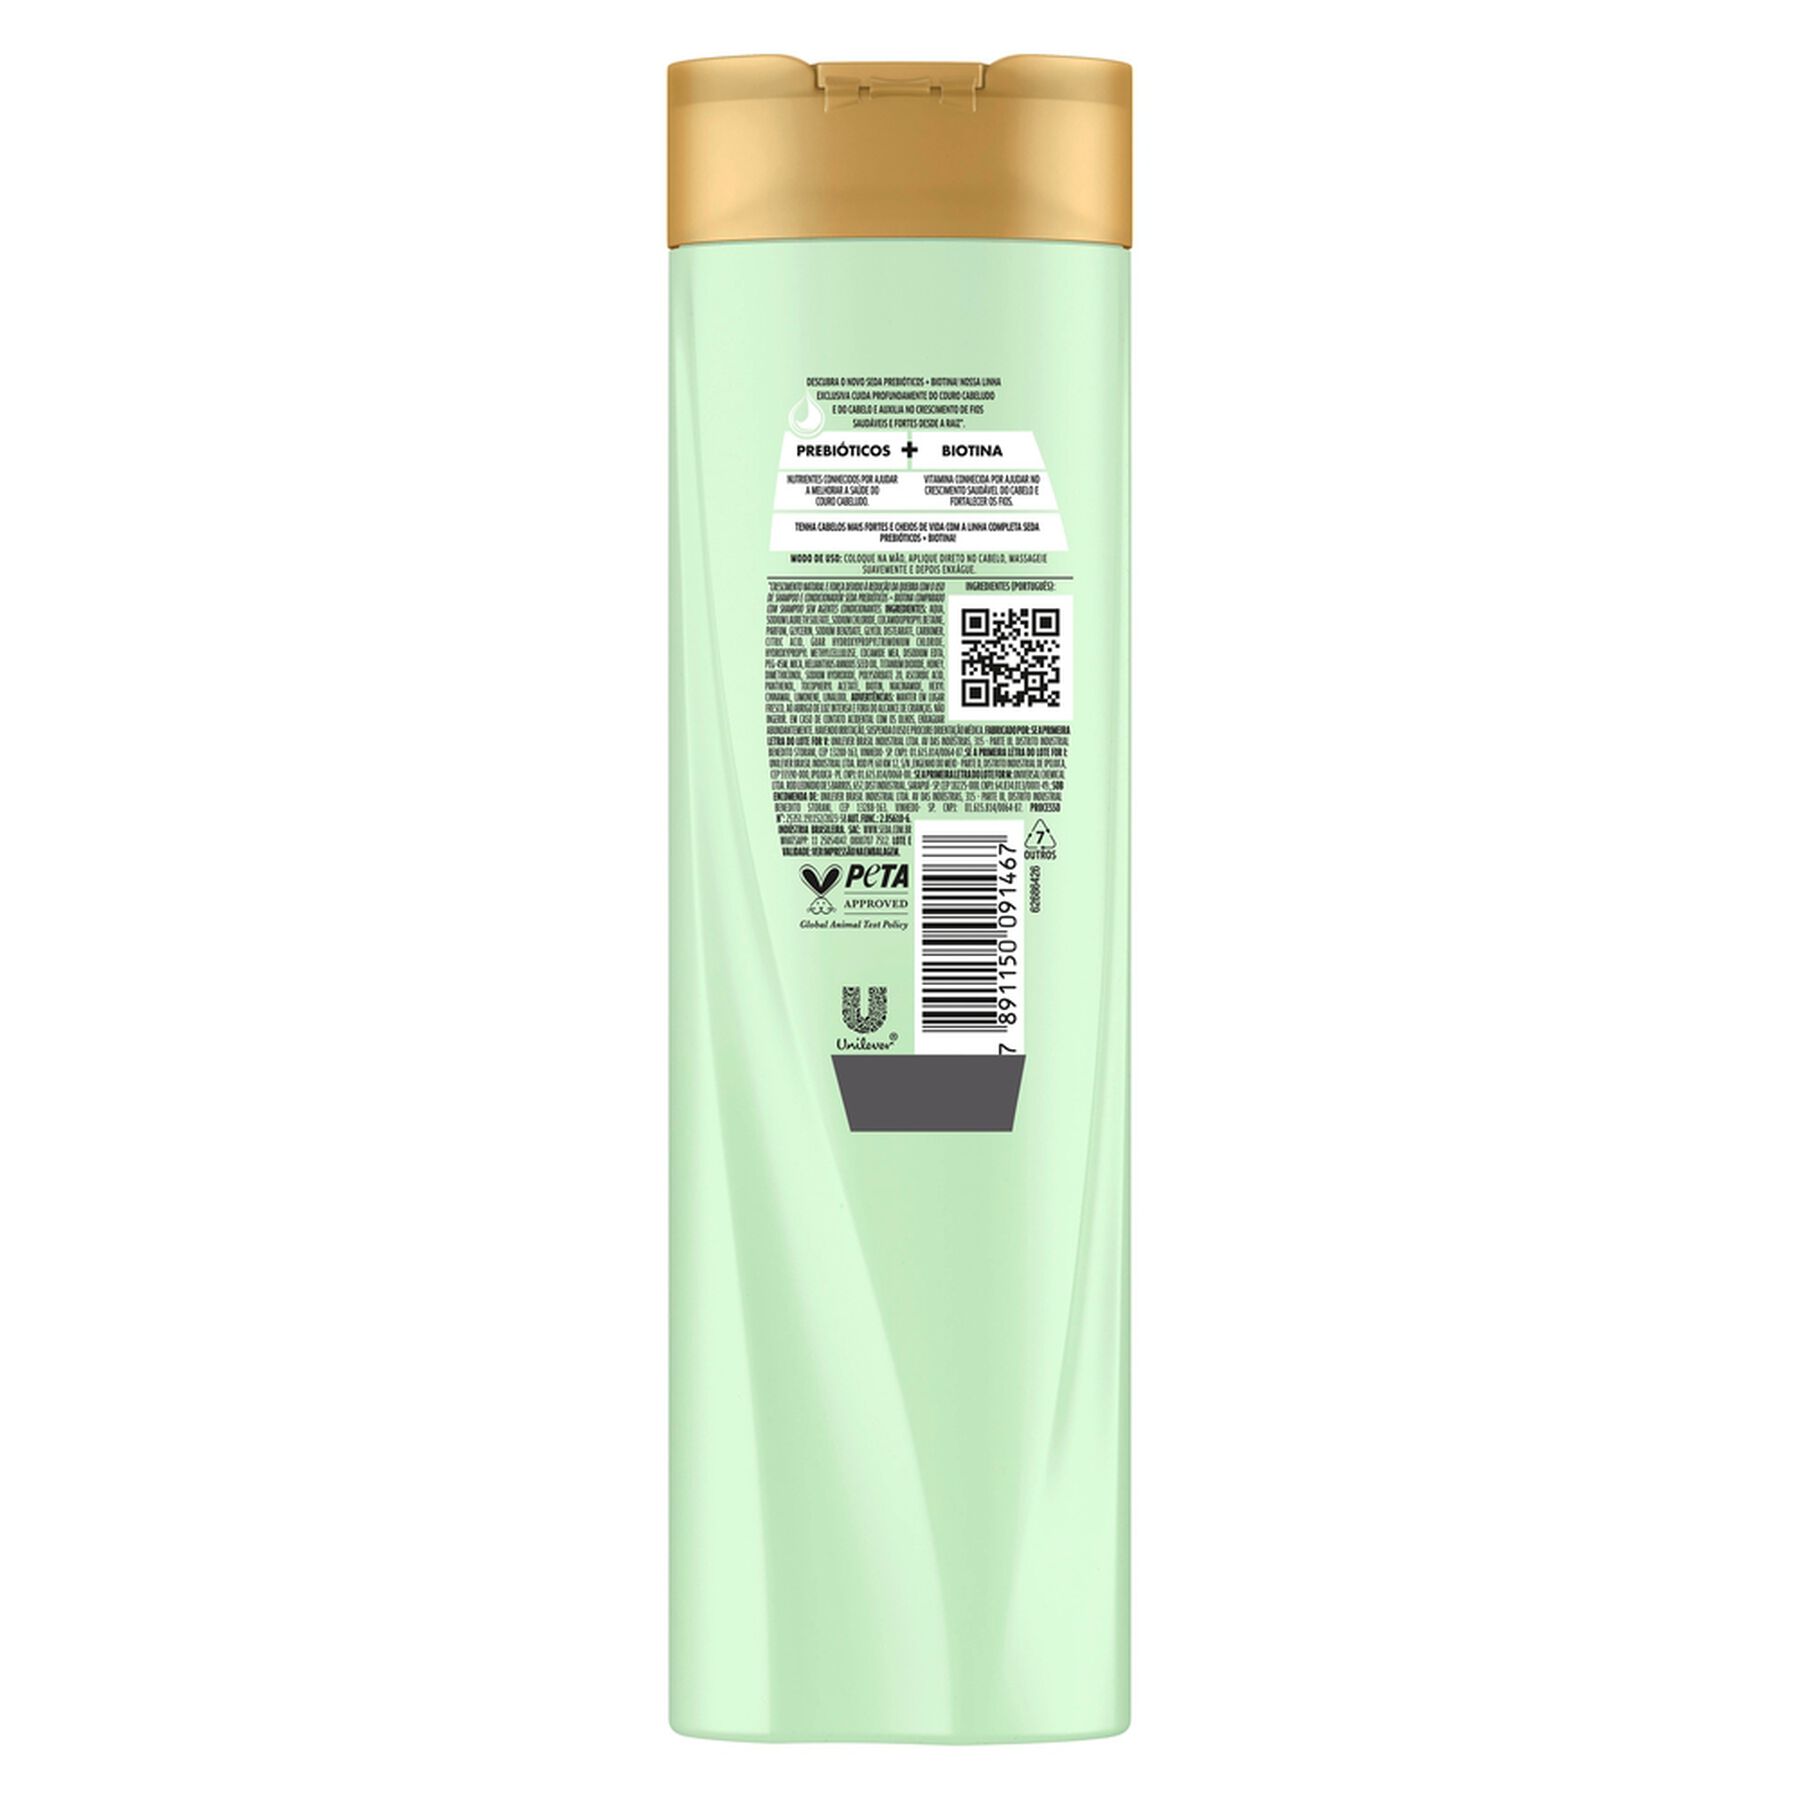 Shampoo Prebióticos + Biotina Seda Frasco 325ml